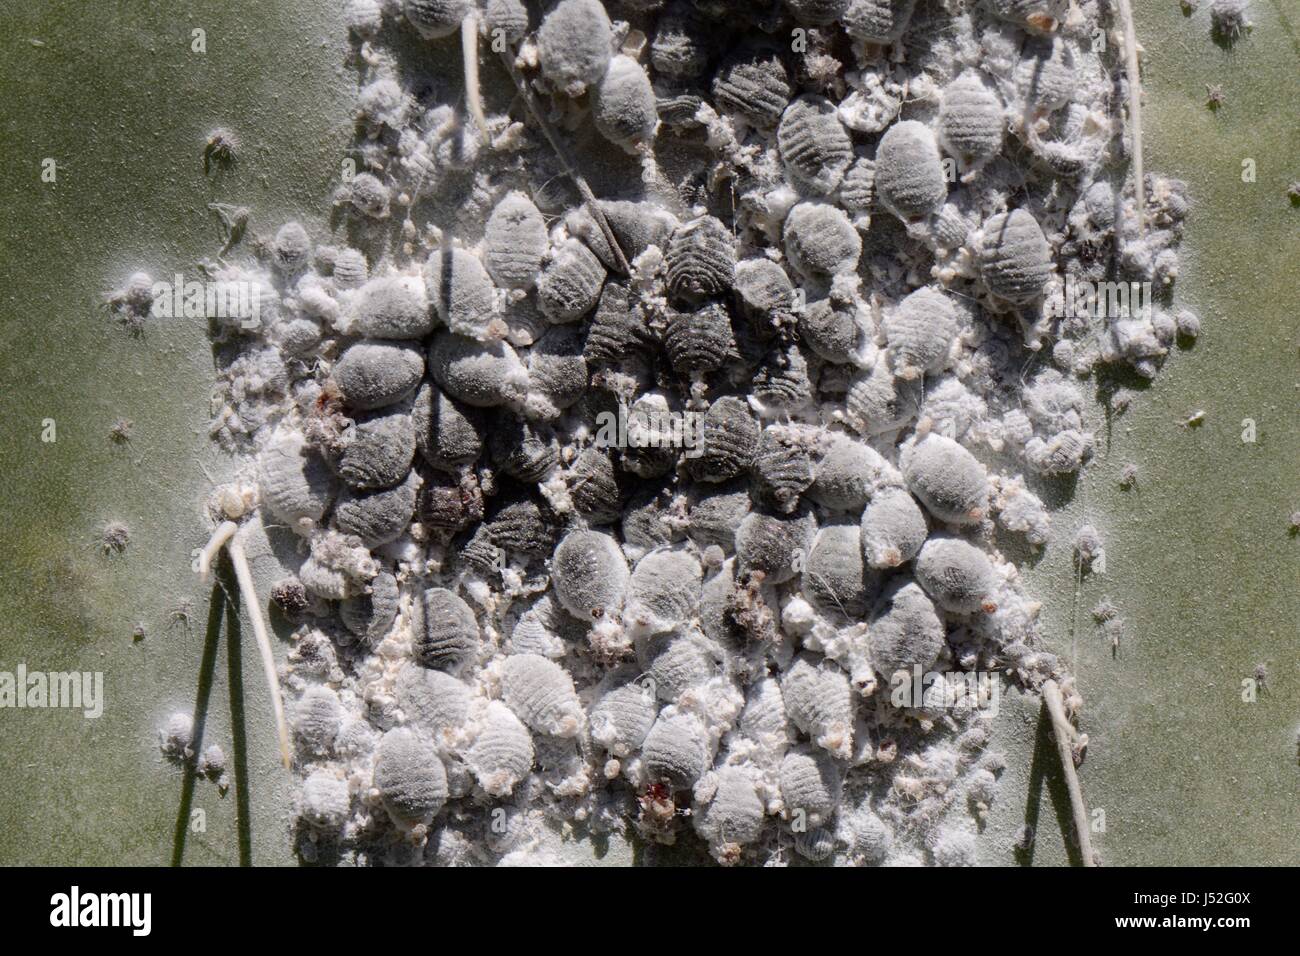 Cochinilla (Dactylopius coccus), densas colonias de insectos de la que se extrae el colorante rojo cochinilla, nopal, Gran Canaria. Foto de stock